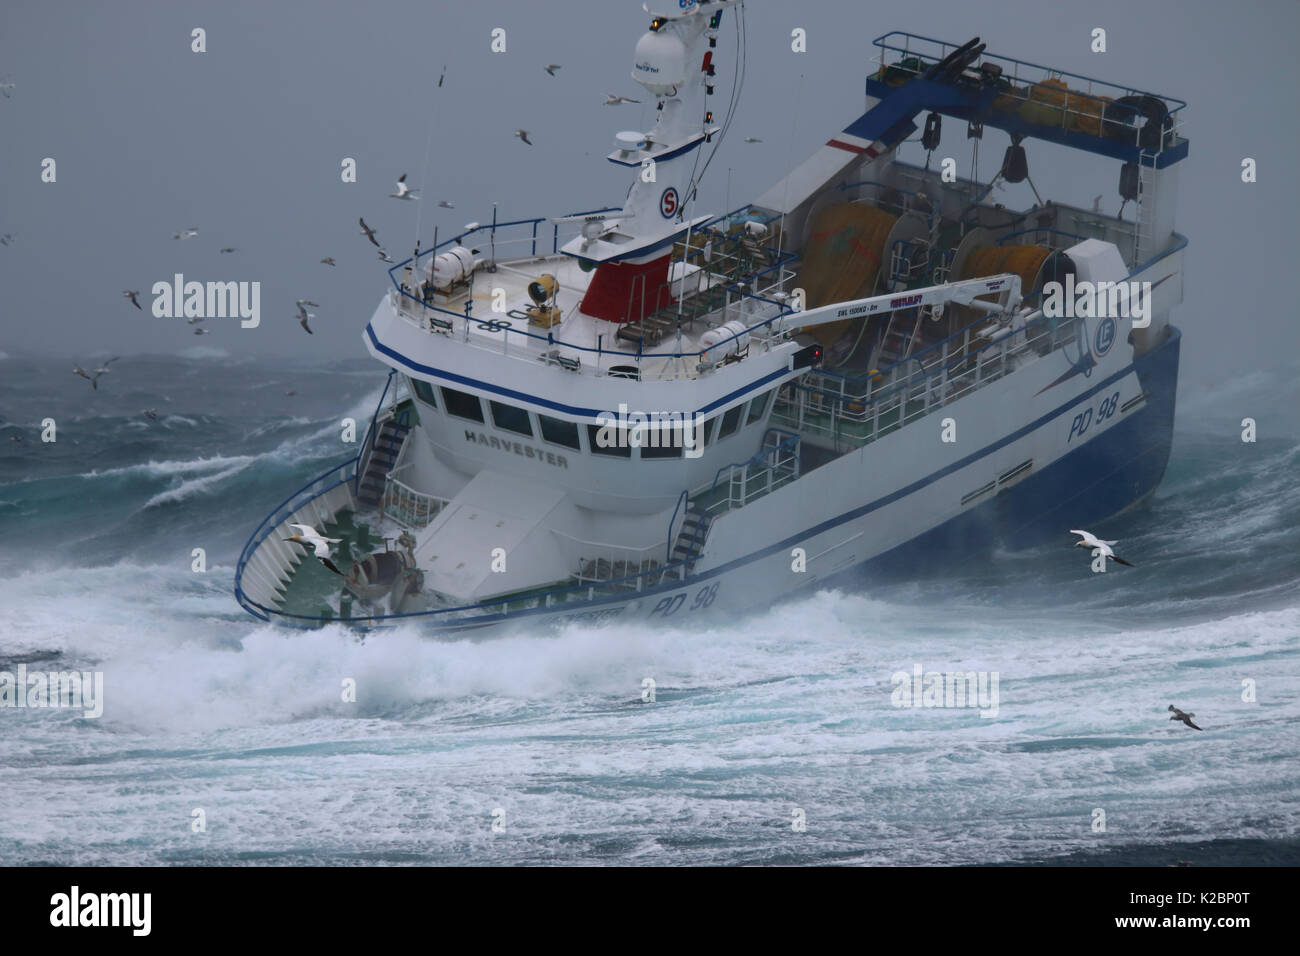 Peschereccio 'Harvester' combattendo in una tempesta di neve sul Mare del Nord, febbraio 2016. Proprietà rilasciato. Foto Stock